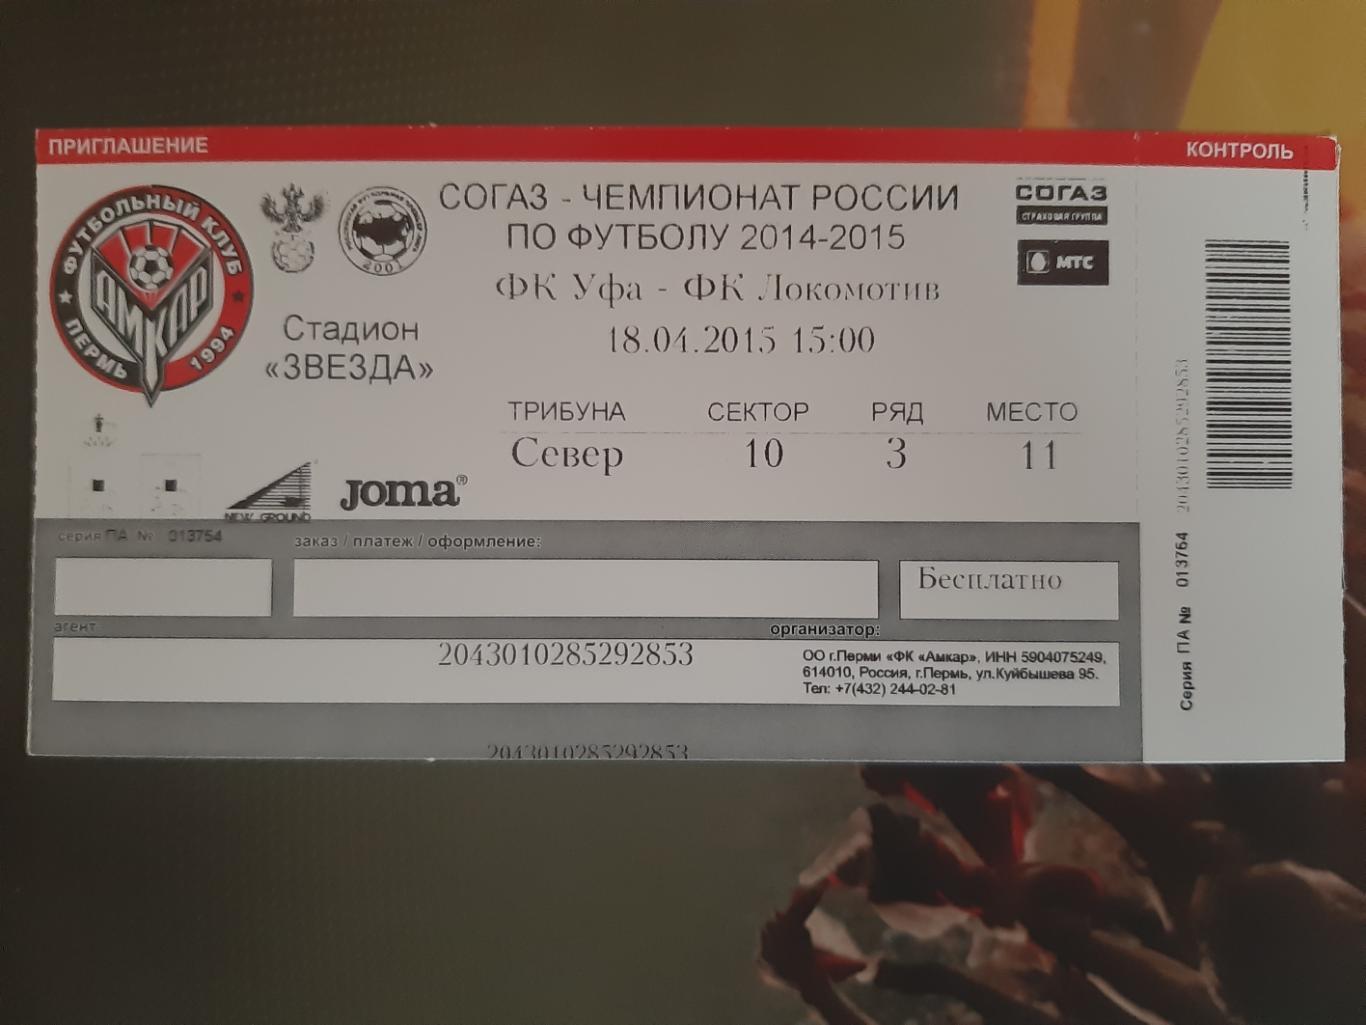 Уфа-Локомотив 2015